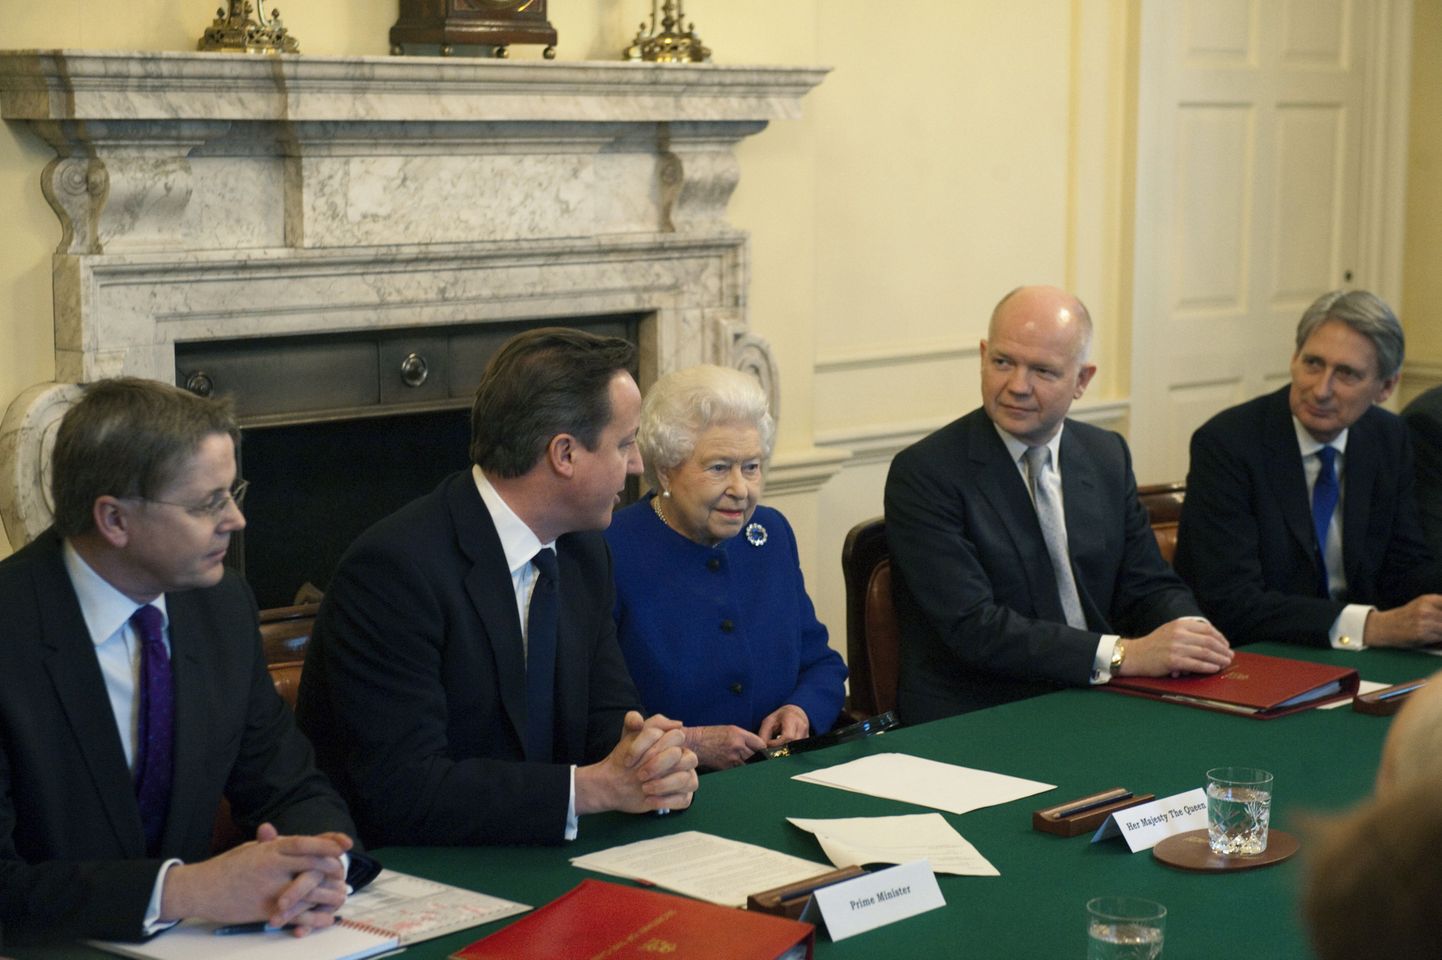 Kuninganna Elizabeth II kuulab peaministri David Cameroni juttu. Kroonitud pea vasakul käel istub välisminister William Hague.